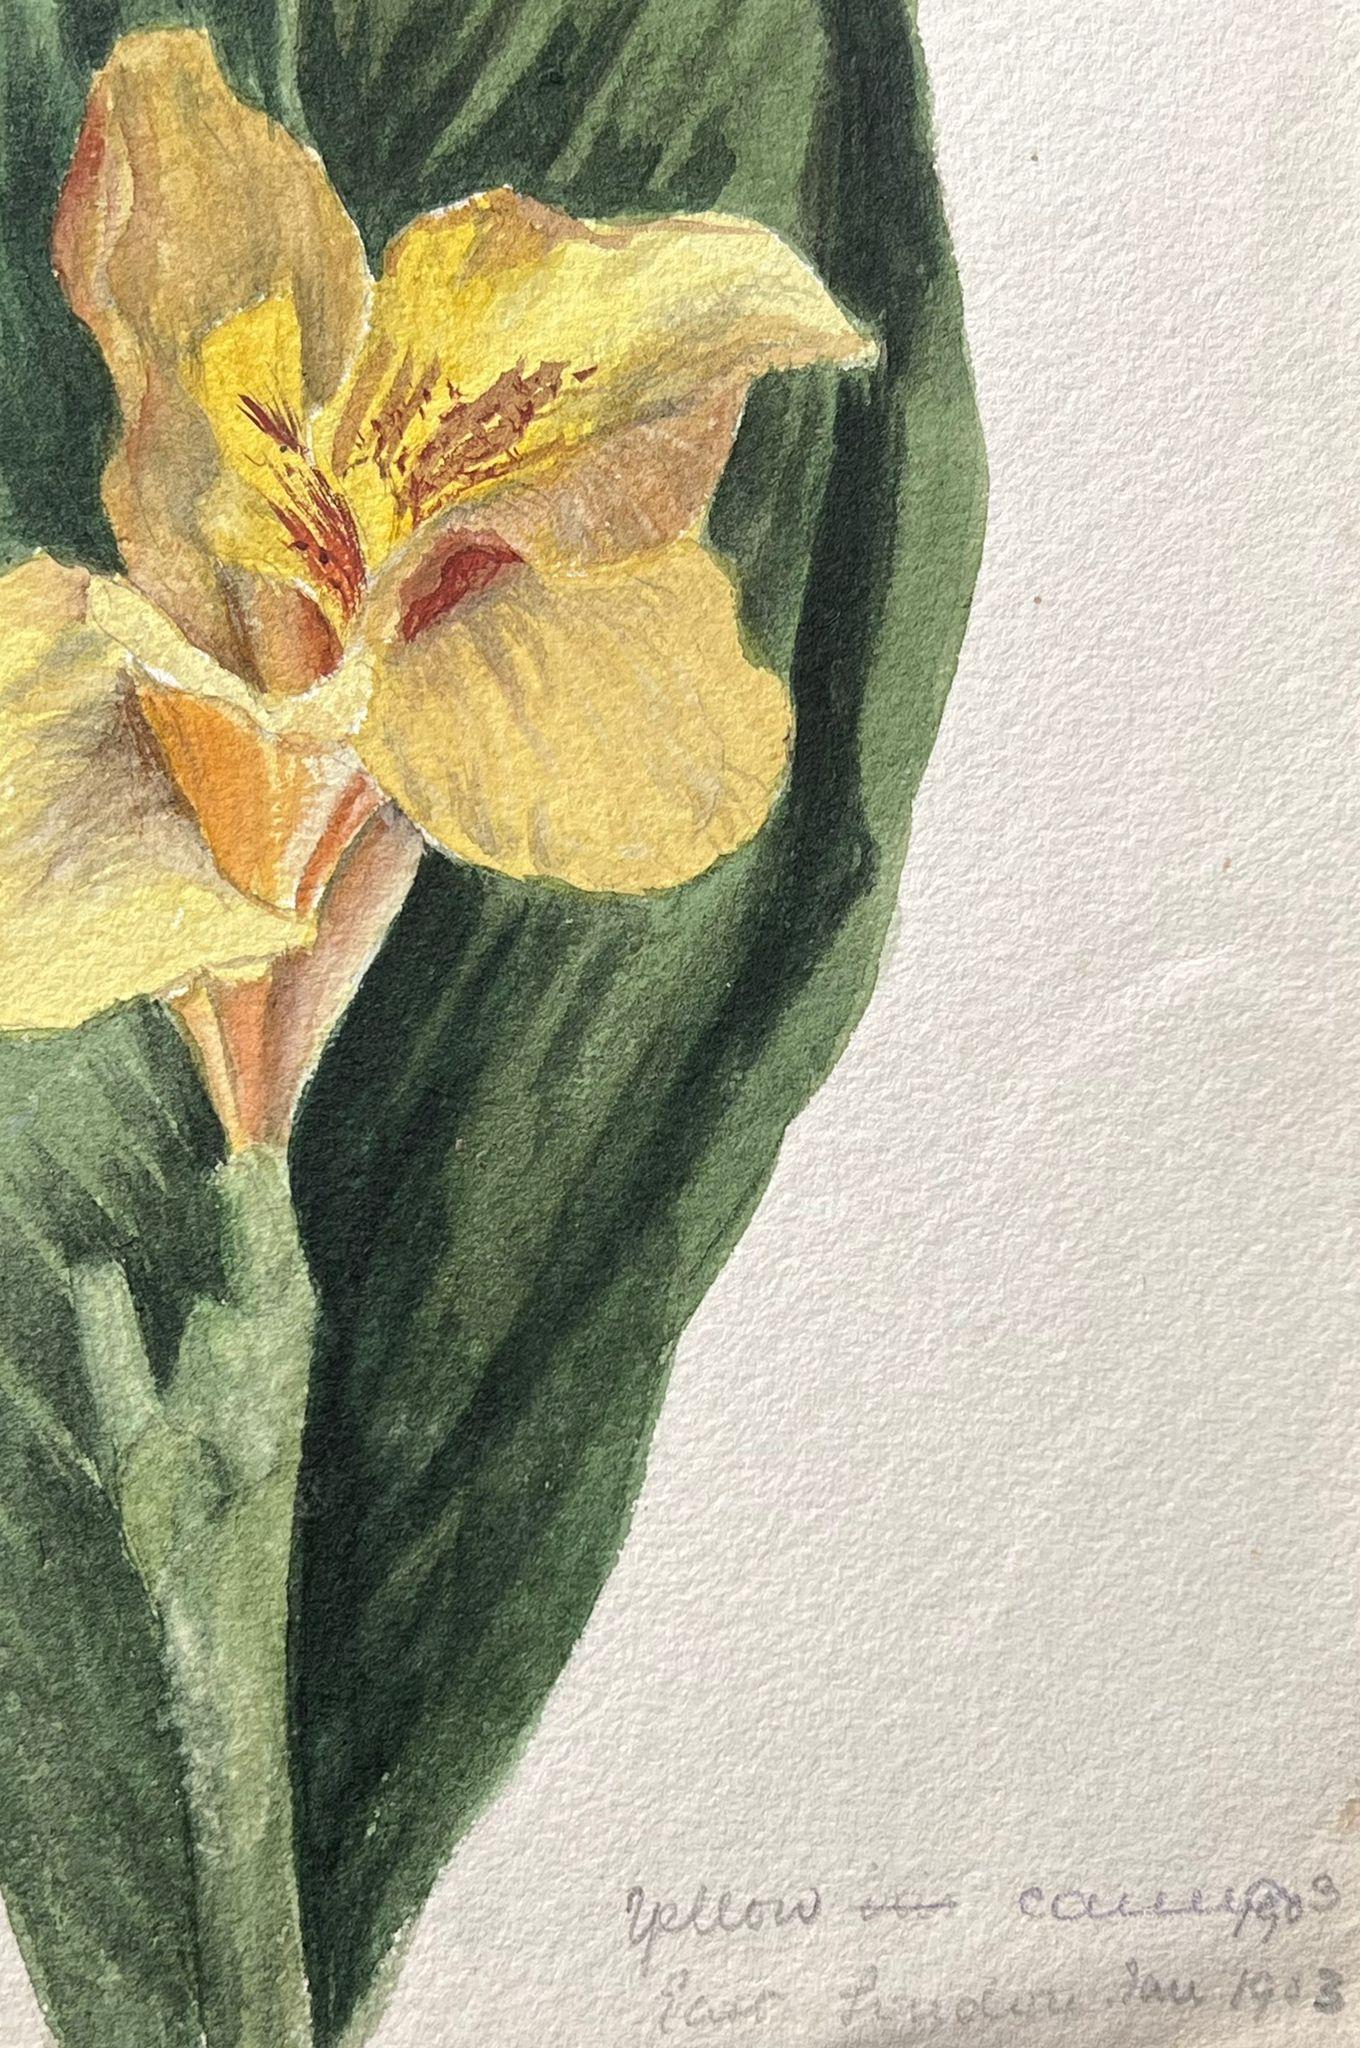 Belle peinture botanique britannique ancienne représentant un seul daffodil - Painting de Caroline Worsley